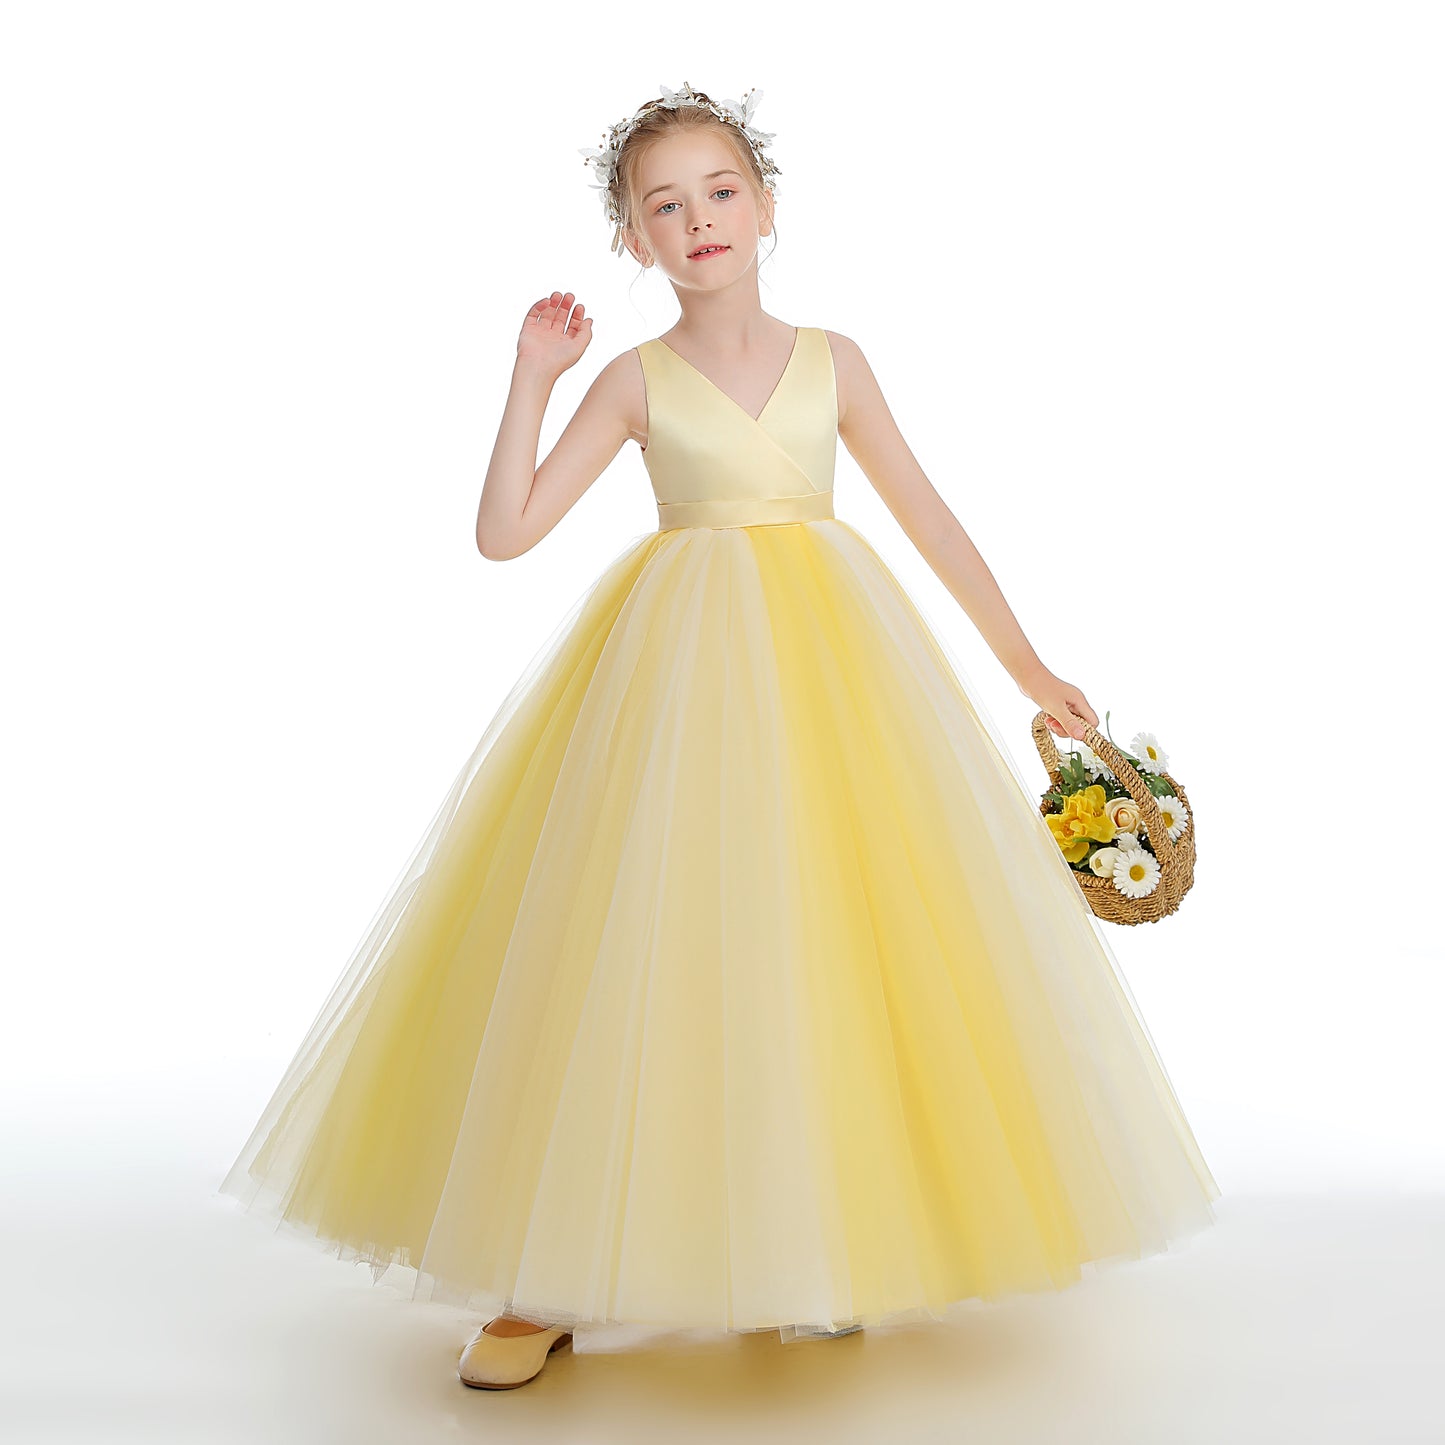 Sleeveless V Neck Yellow Tulle Flower Girl Dresses